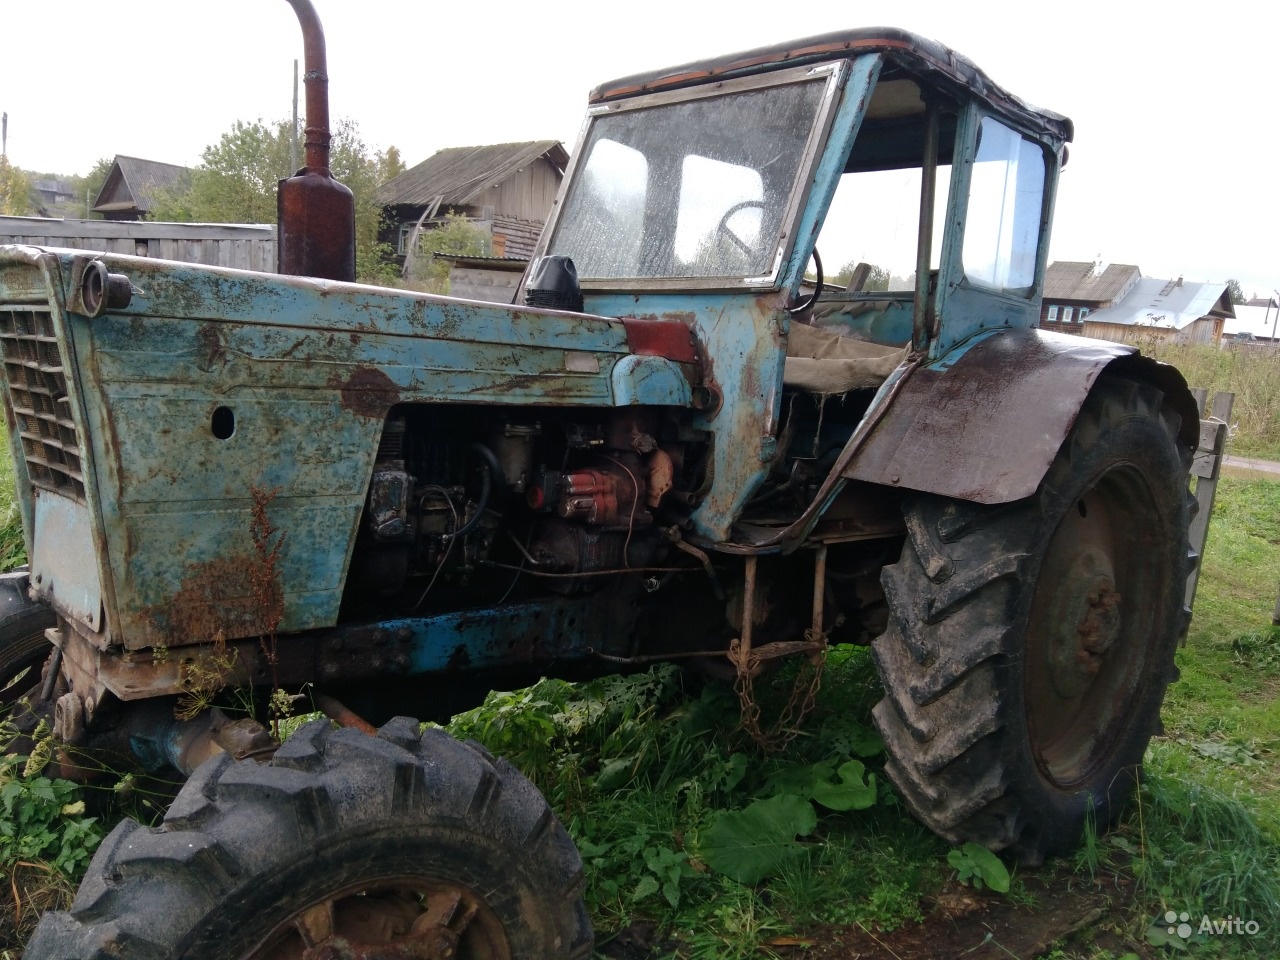 Авито нижегородской области трактора б у. МТЗ-80 трактор гнилой. МТЗ 80 хлам. Трактор МТЗ 80 за 100000. МТЗ-80 трактор сломанный.